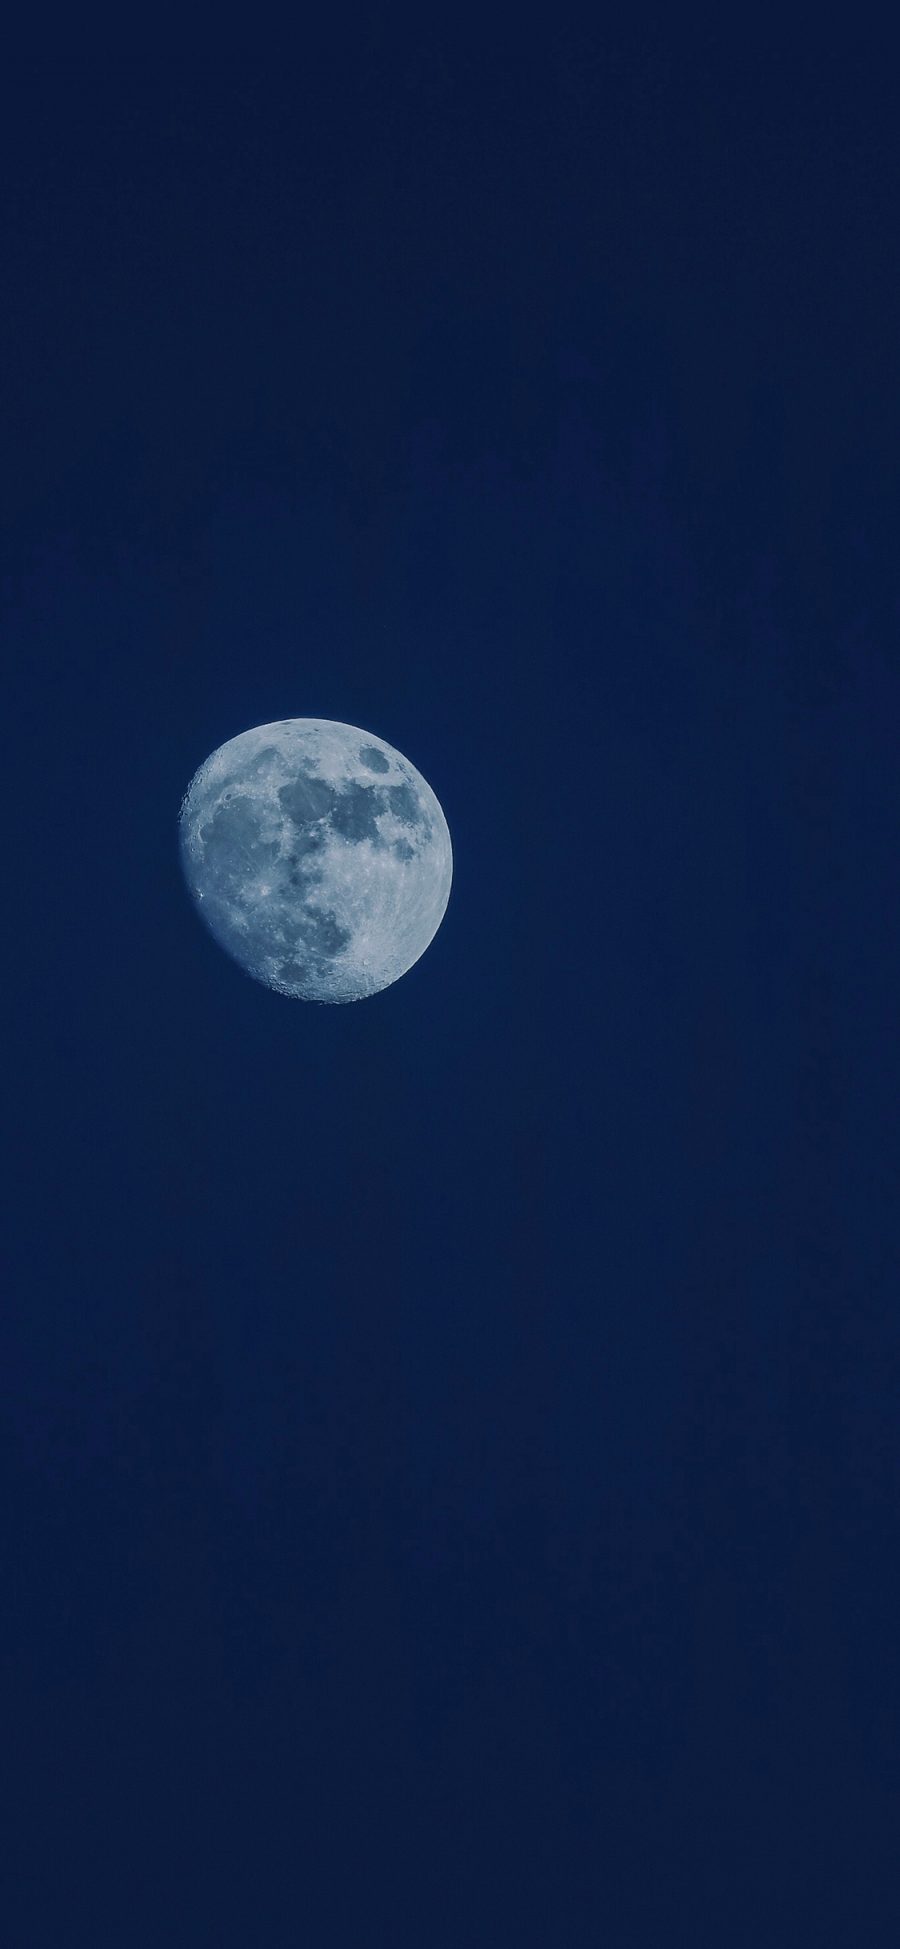 [2436×1125]月亮 天空 夜晚 蓝色 深邃 苹果手机壁纸图片